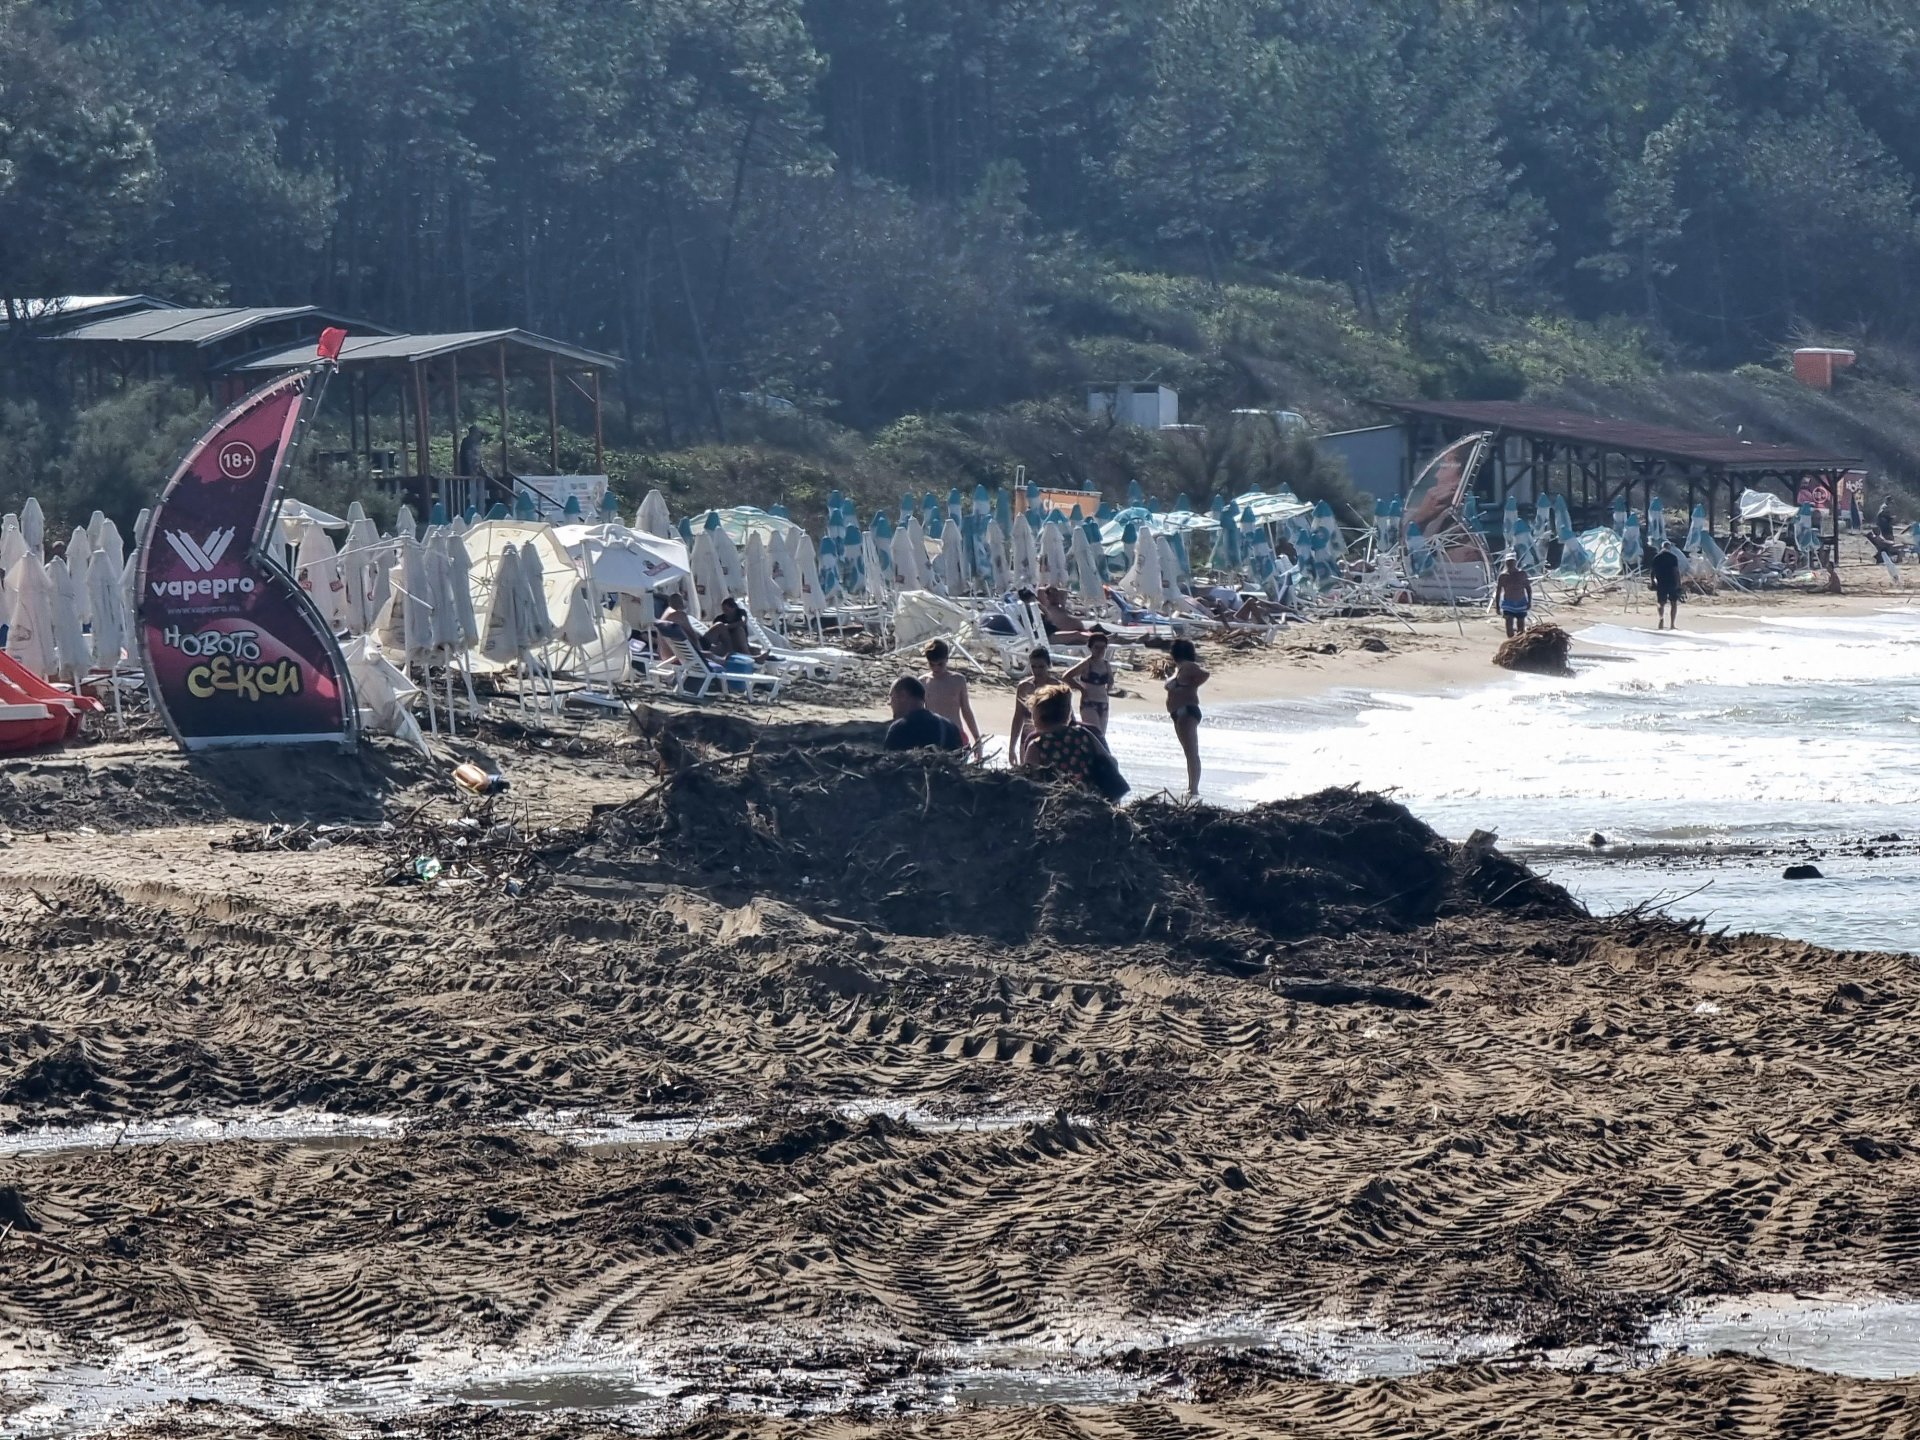  С тежка техника започна почистването на централния плаж в град Ахтопол.